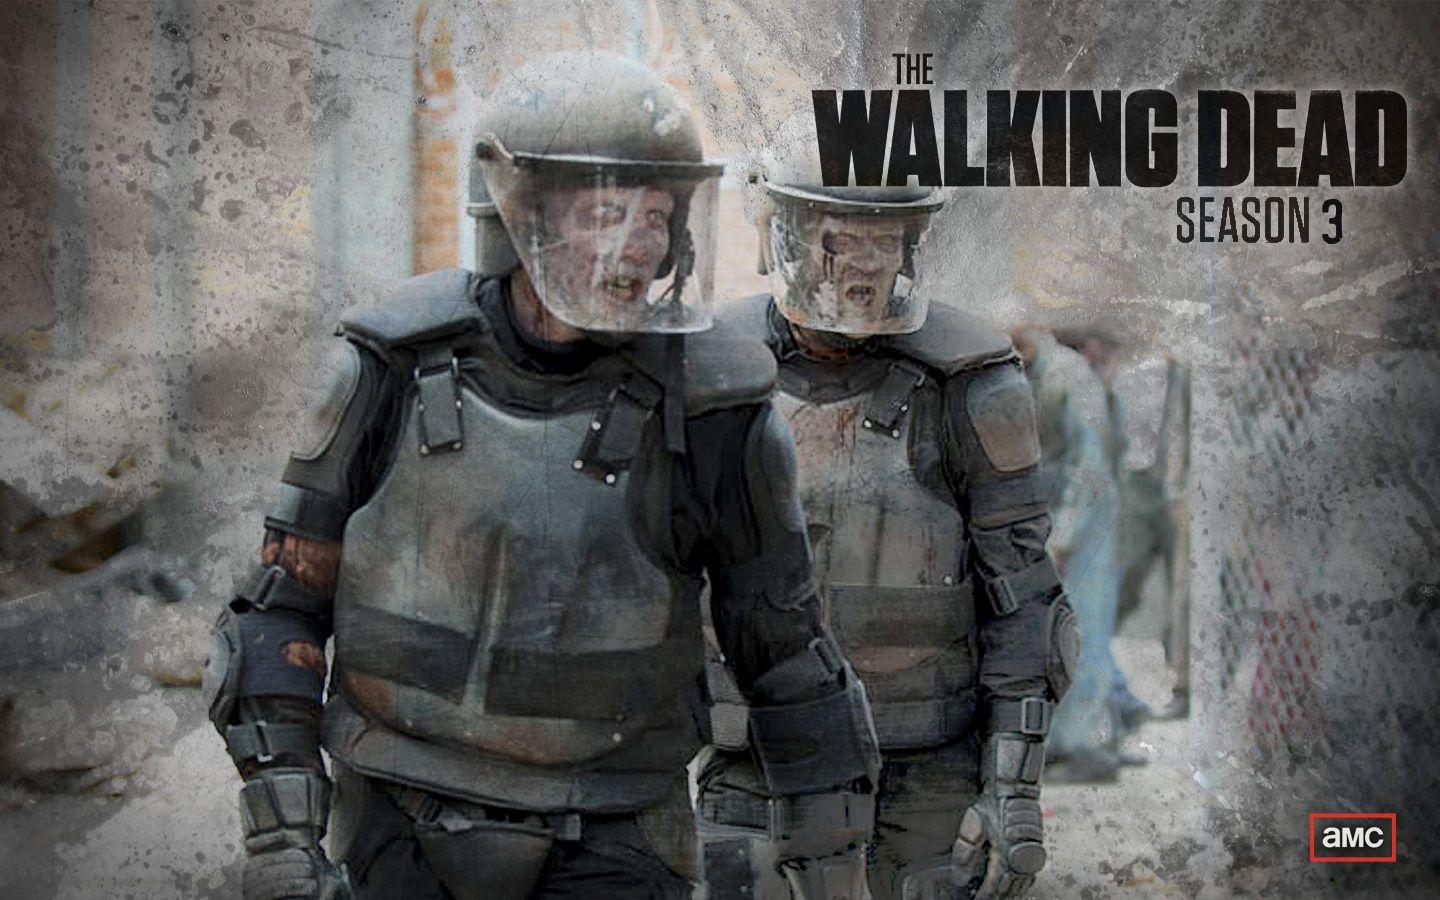 The Walking Dead Season 3 Wallpaper. Zombies. Walking